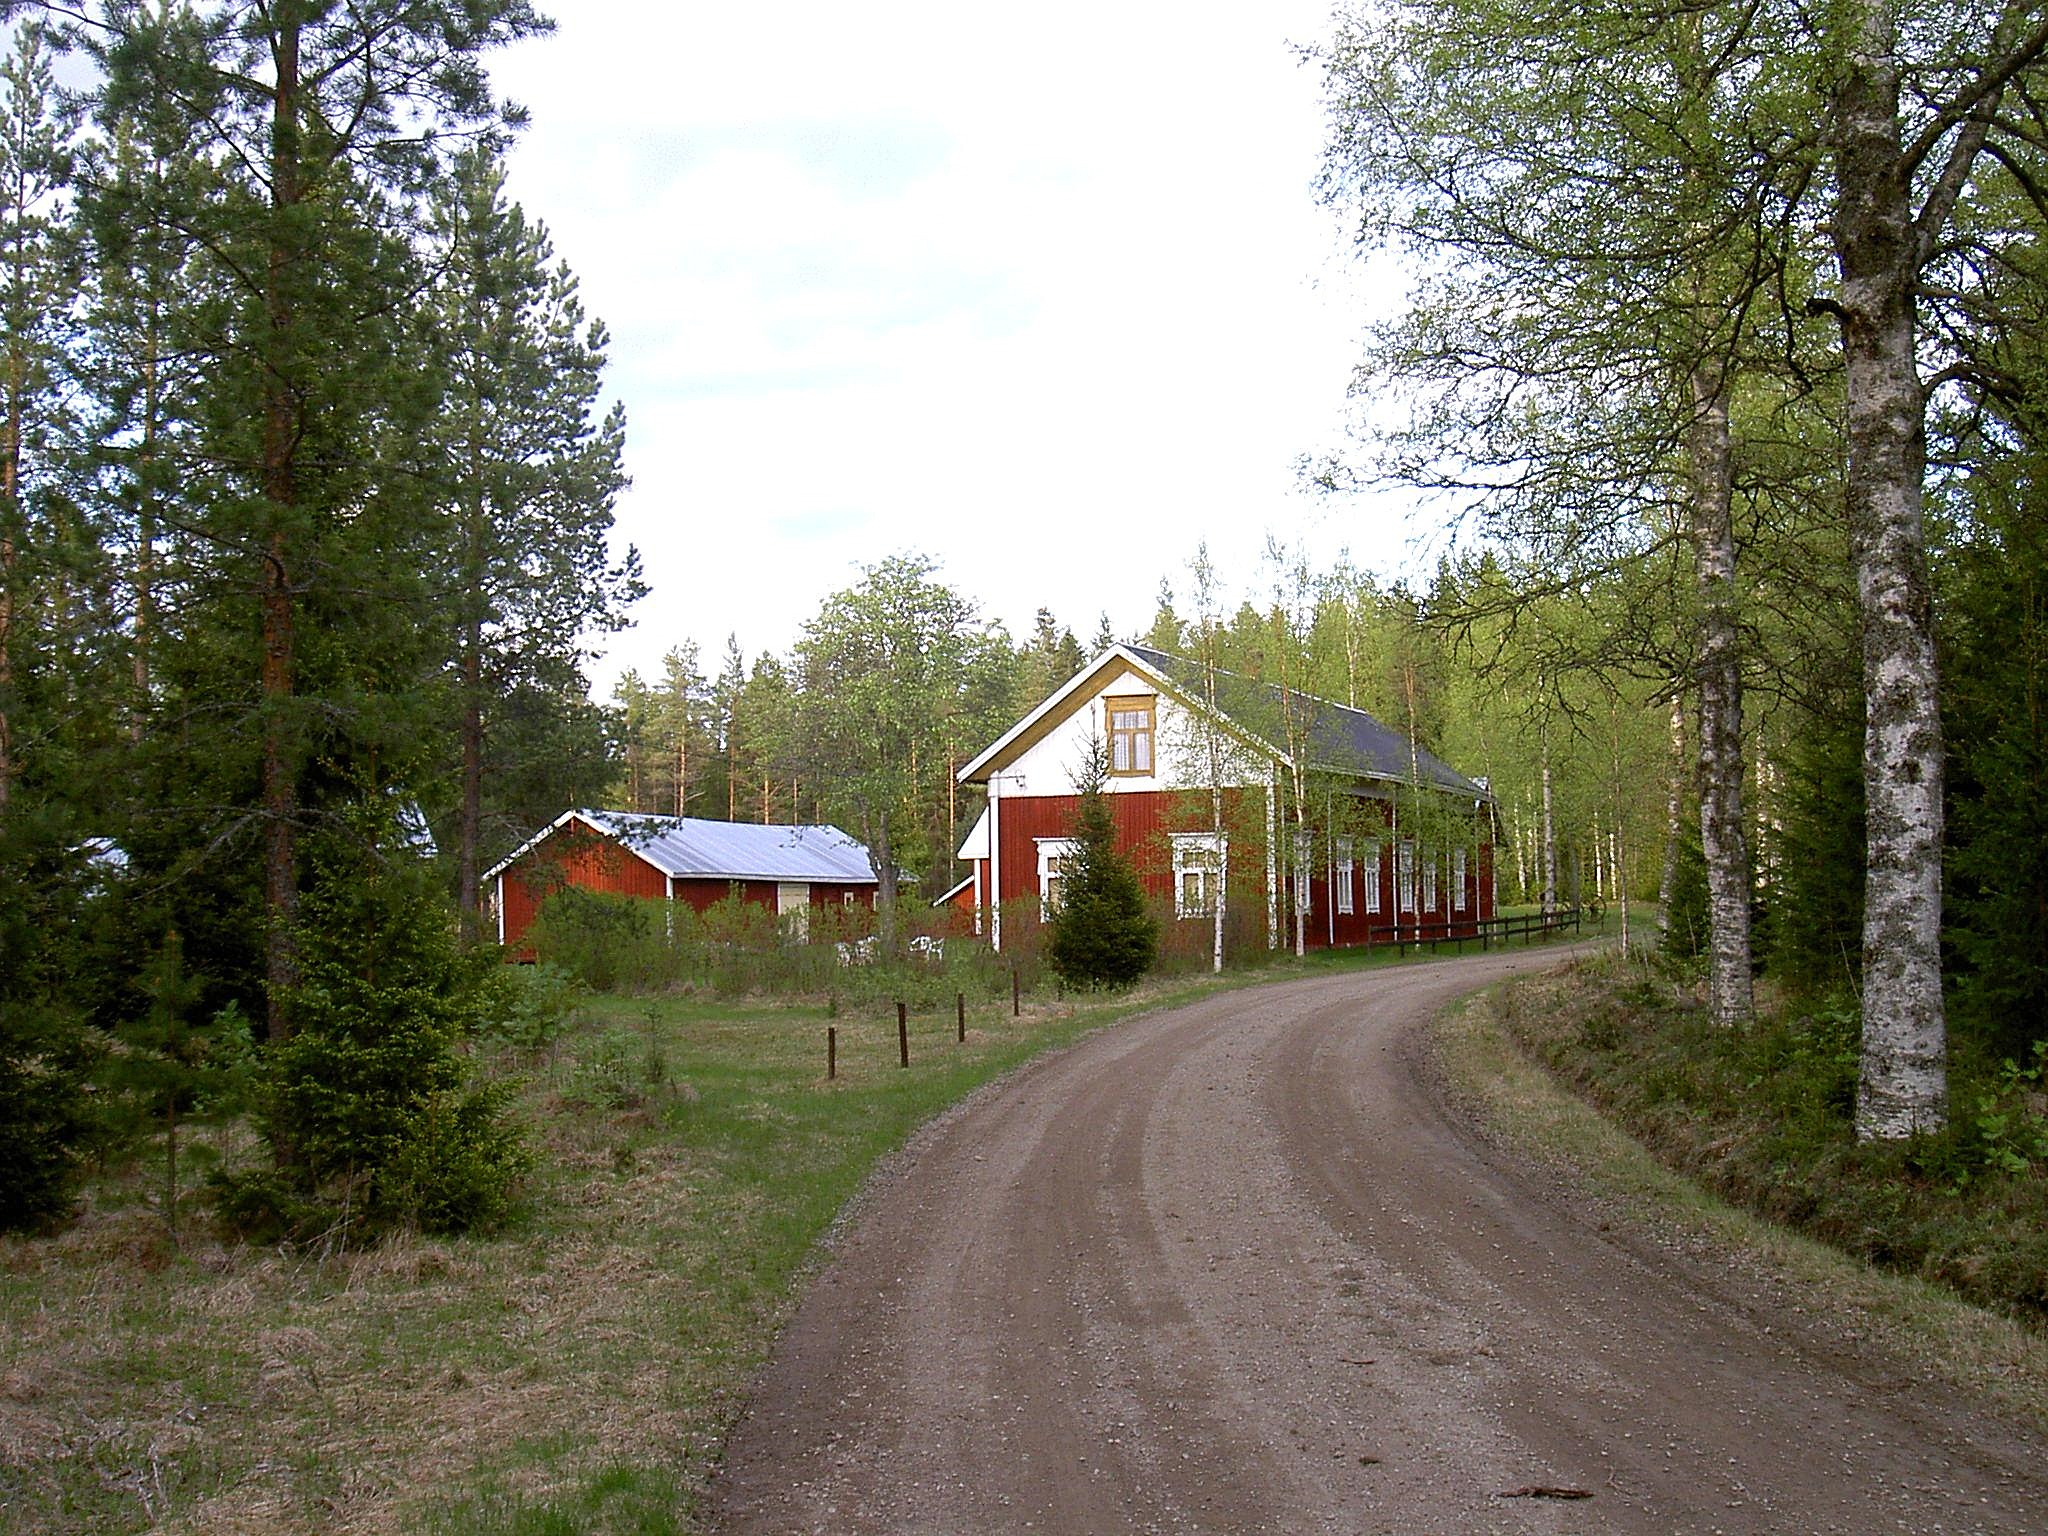 Dahlroos stilrena bondgård står nära Lillsjövägen. Fotot från 2003.